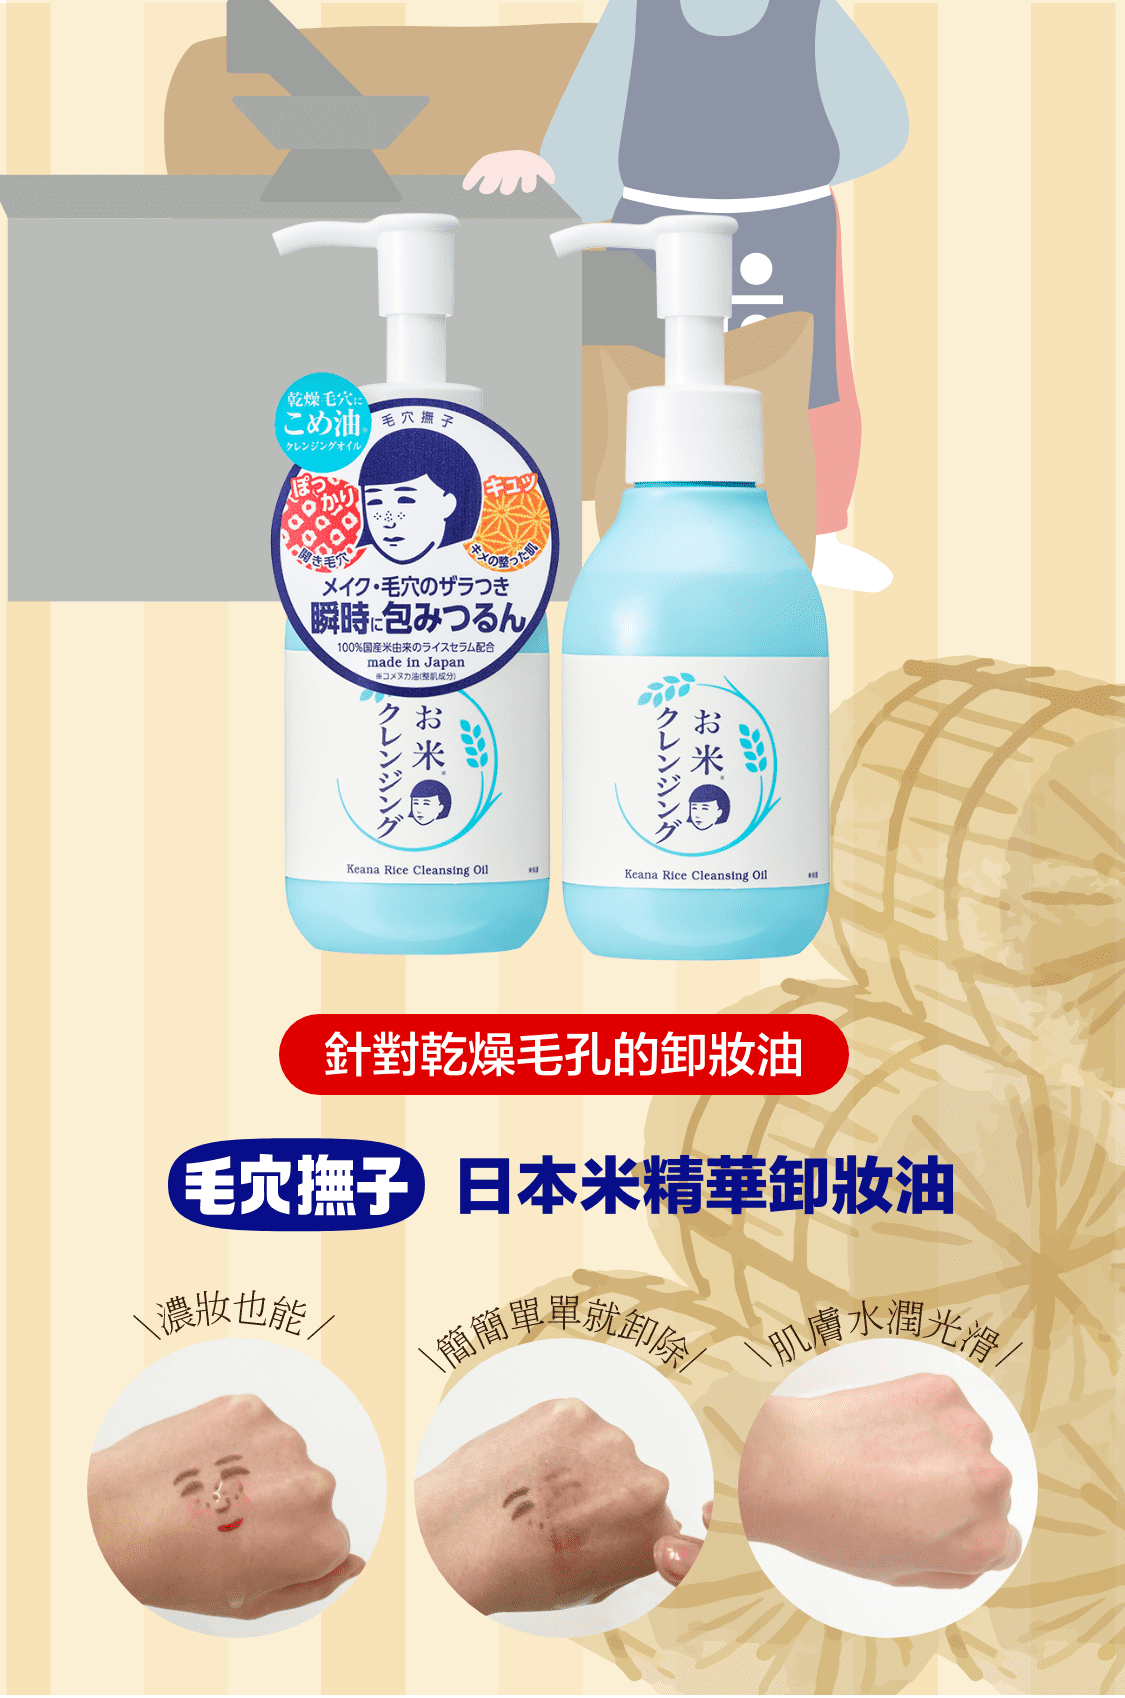 針對乾燥毛孔的卸妝油 日本米精華卸妝油